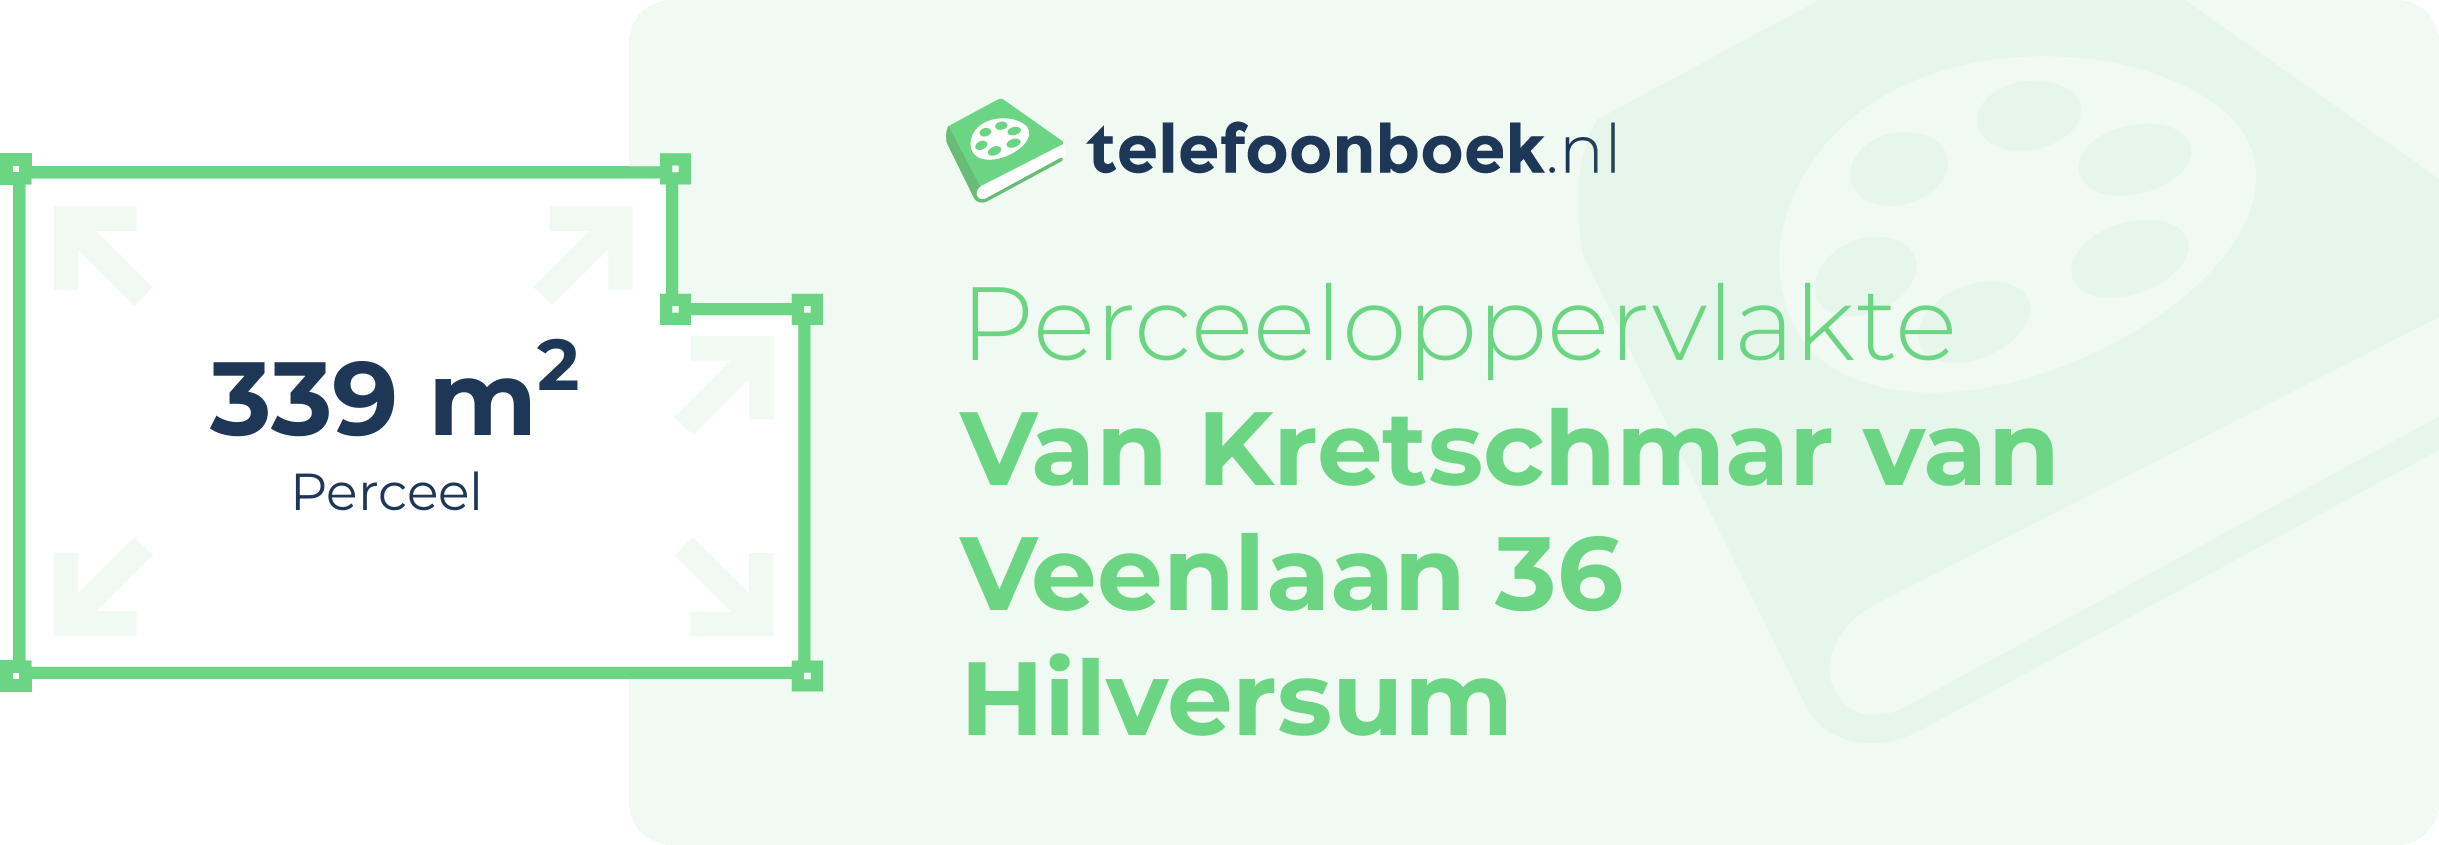 Perceeloppervlakte Van Kretschmar Van Veenlaan 36 Hilversum